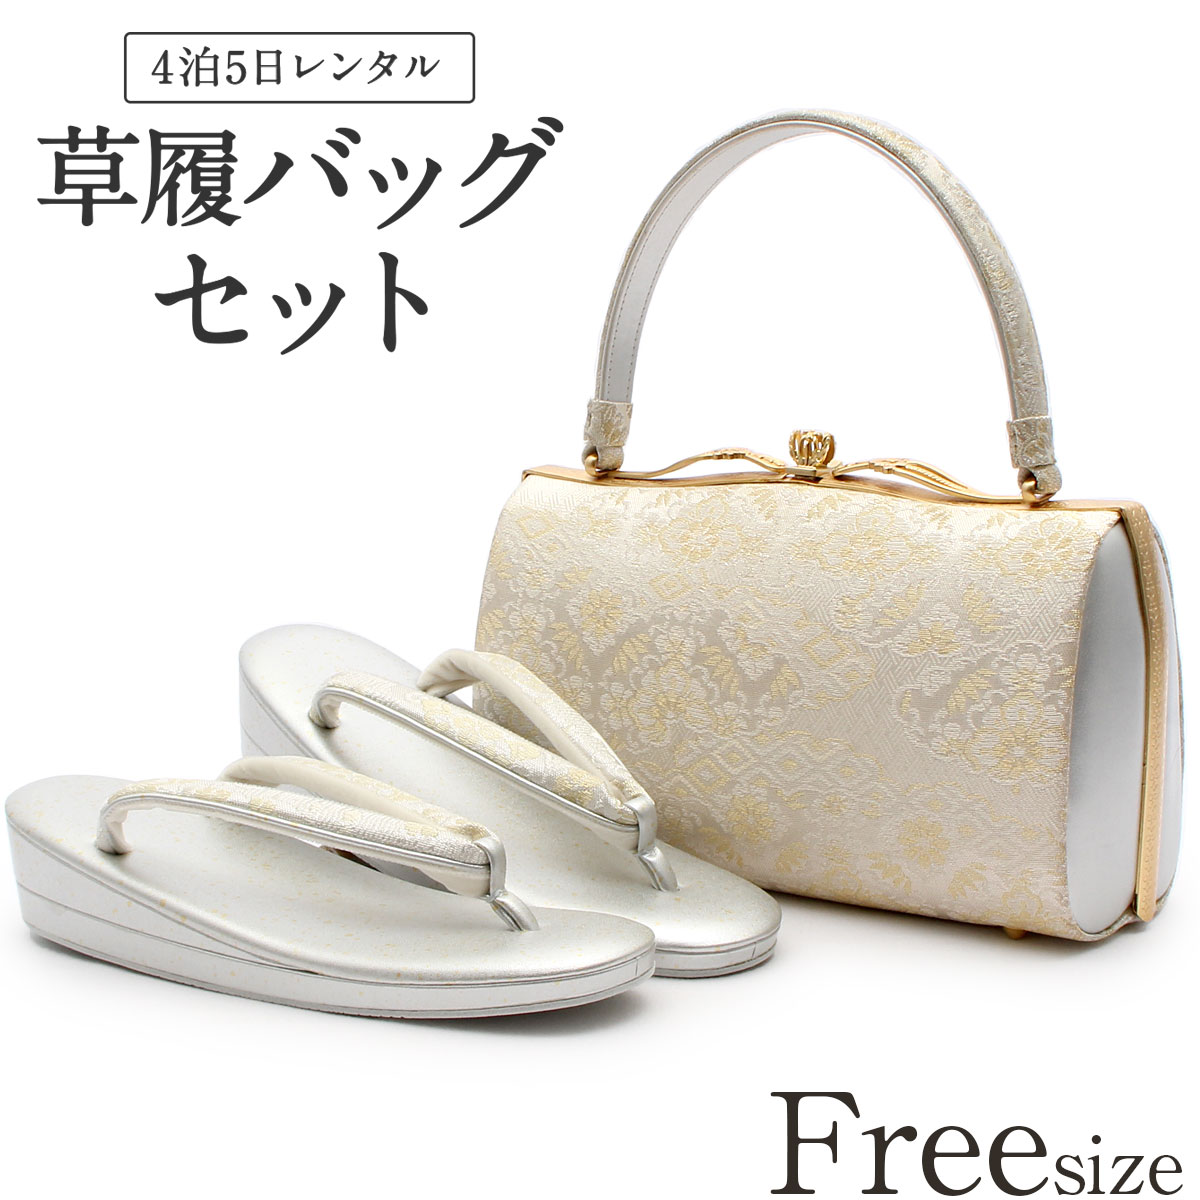 【楽天市場】草履バッグ レンタル Mサイズ / シャンパンゴールド